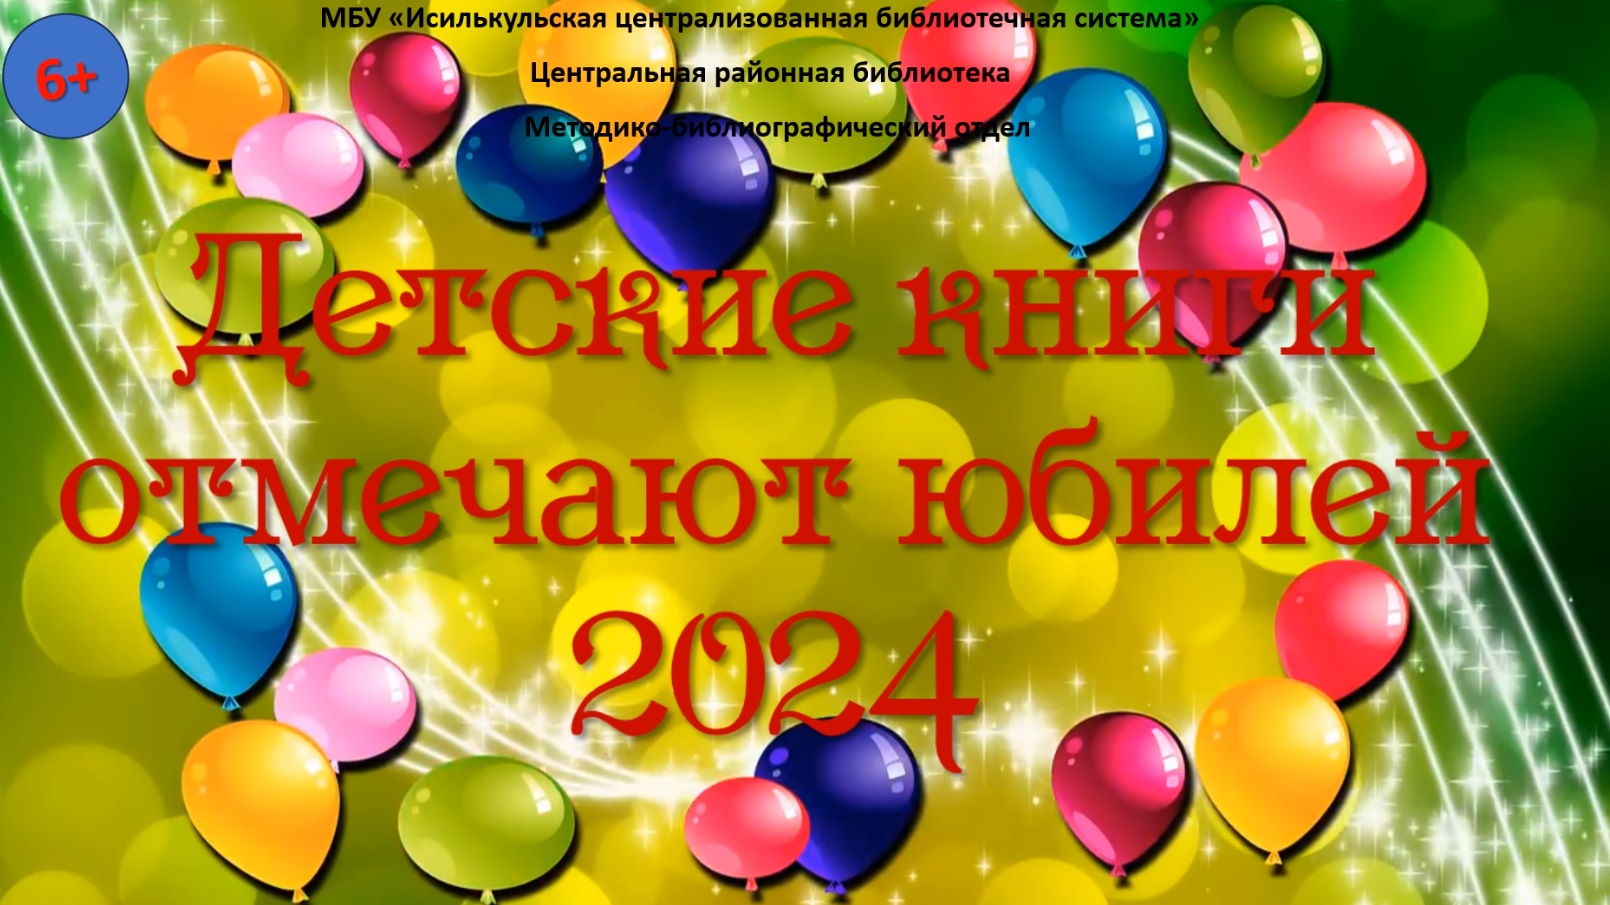 Read more about the article Детские книги отмечают юбилей! 2024